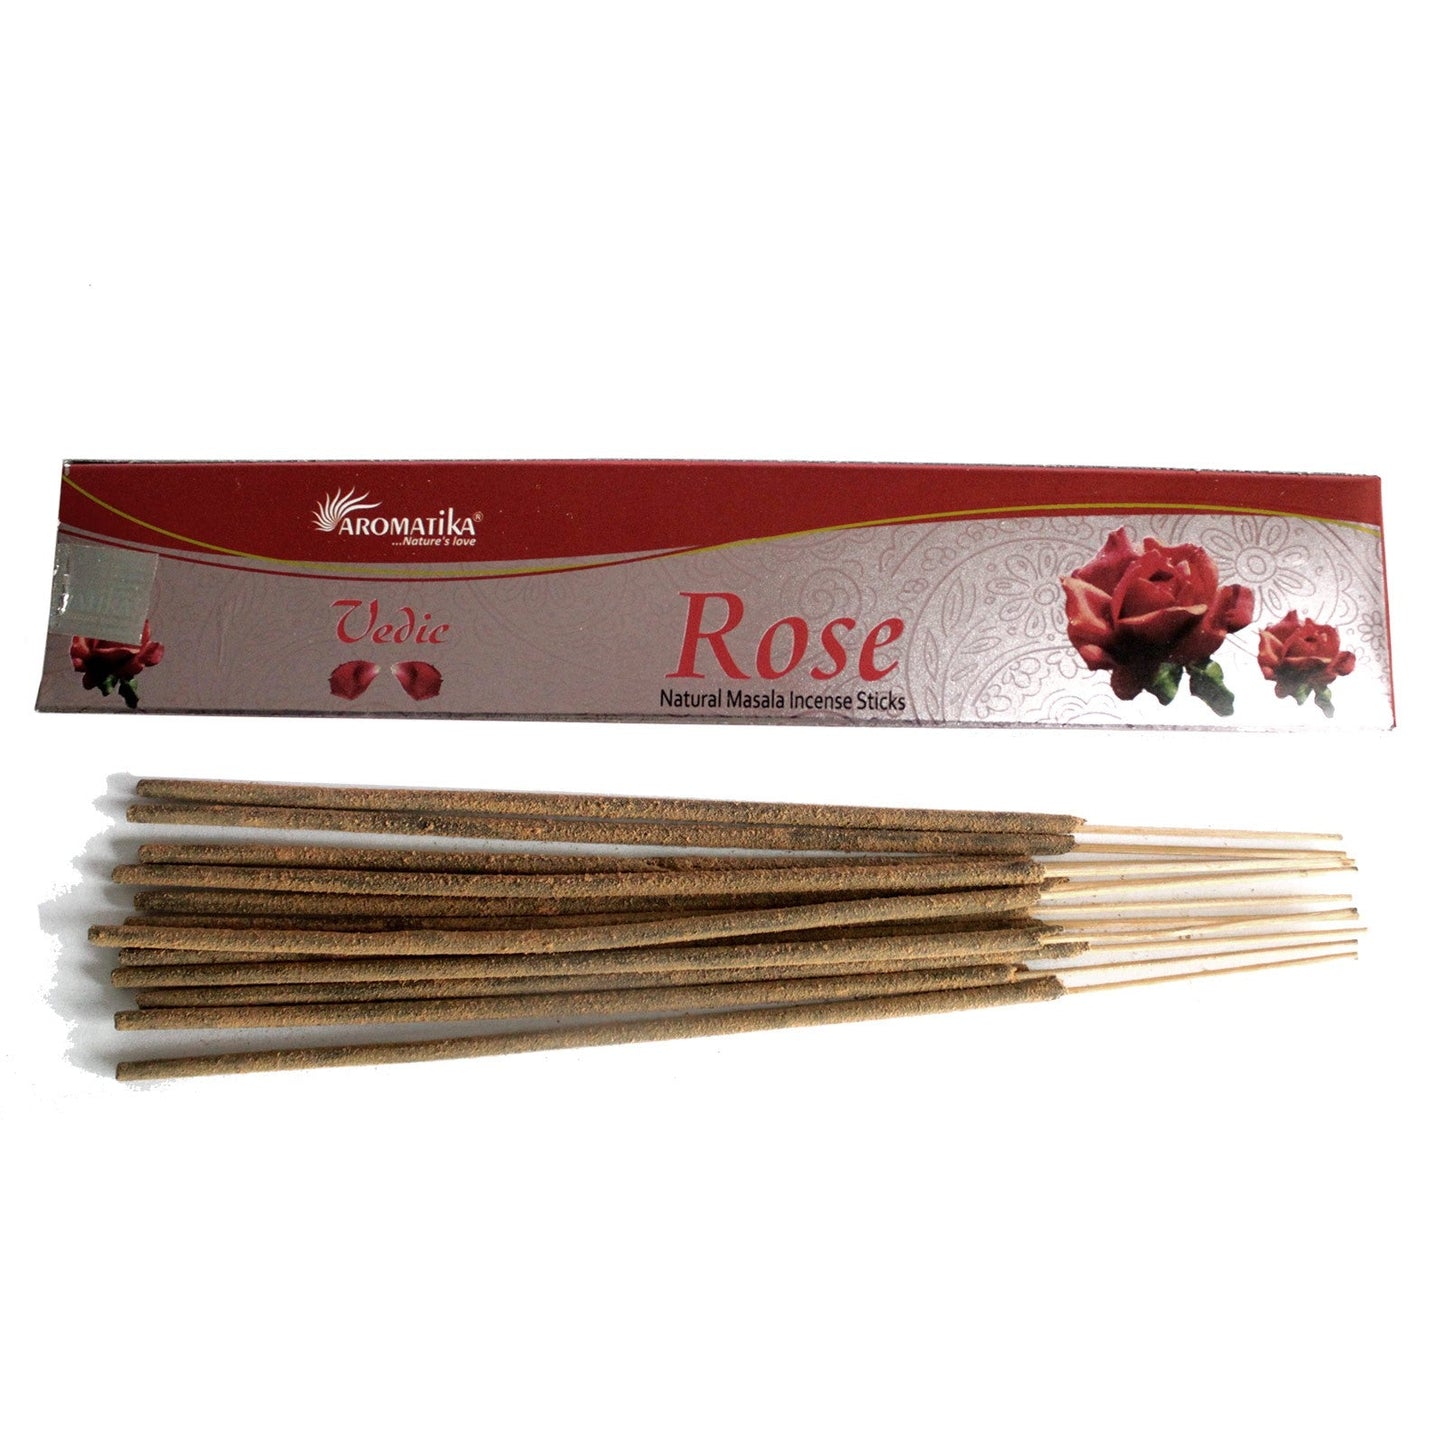 Vedic Natural Incense Sticks Incense Sticks Soul Inspired Rose 